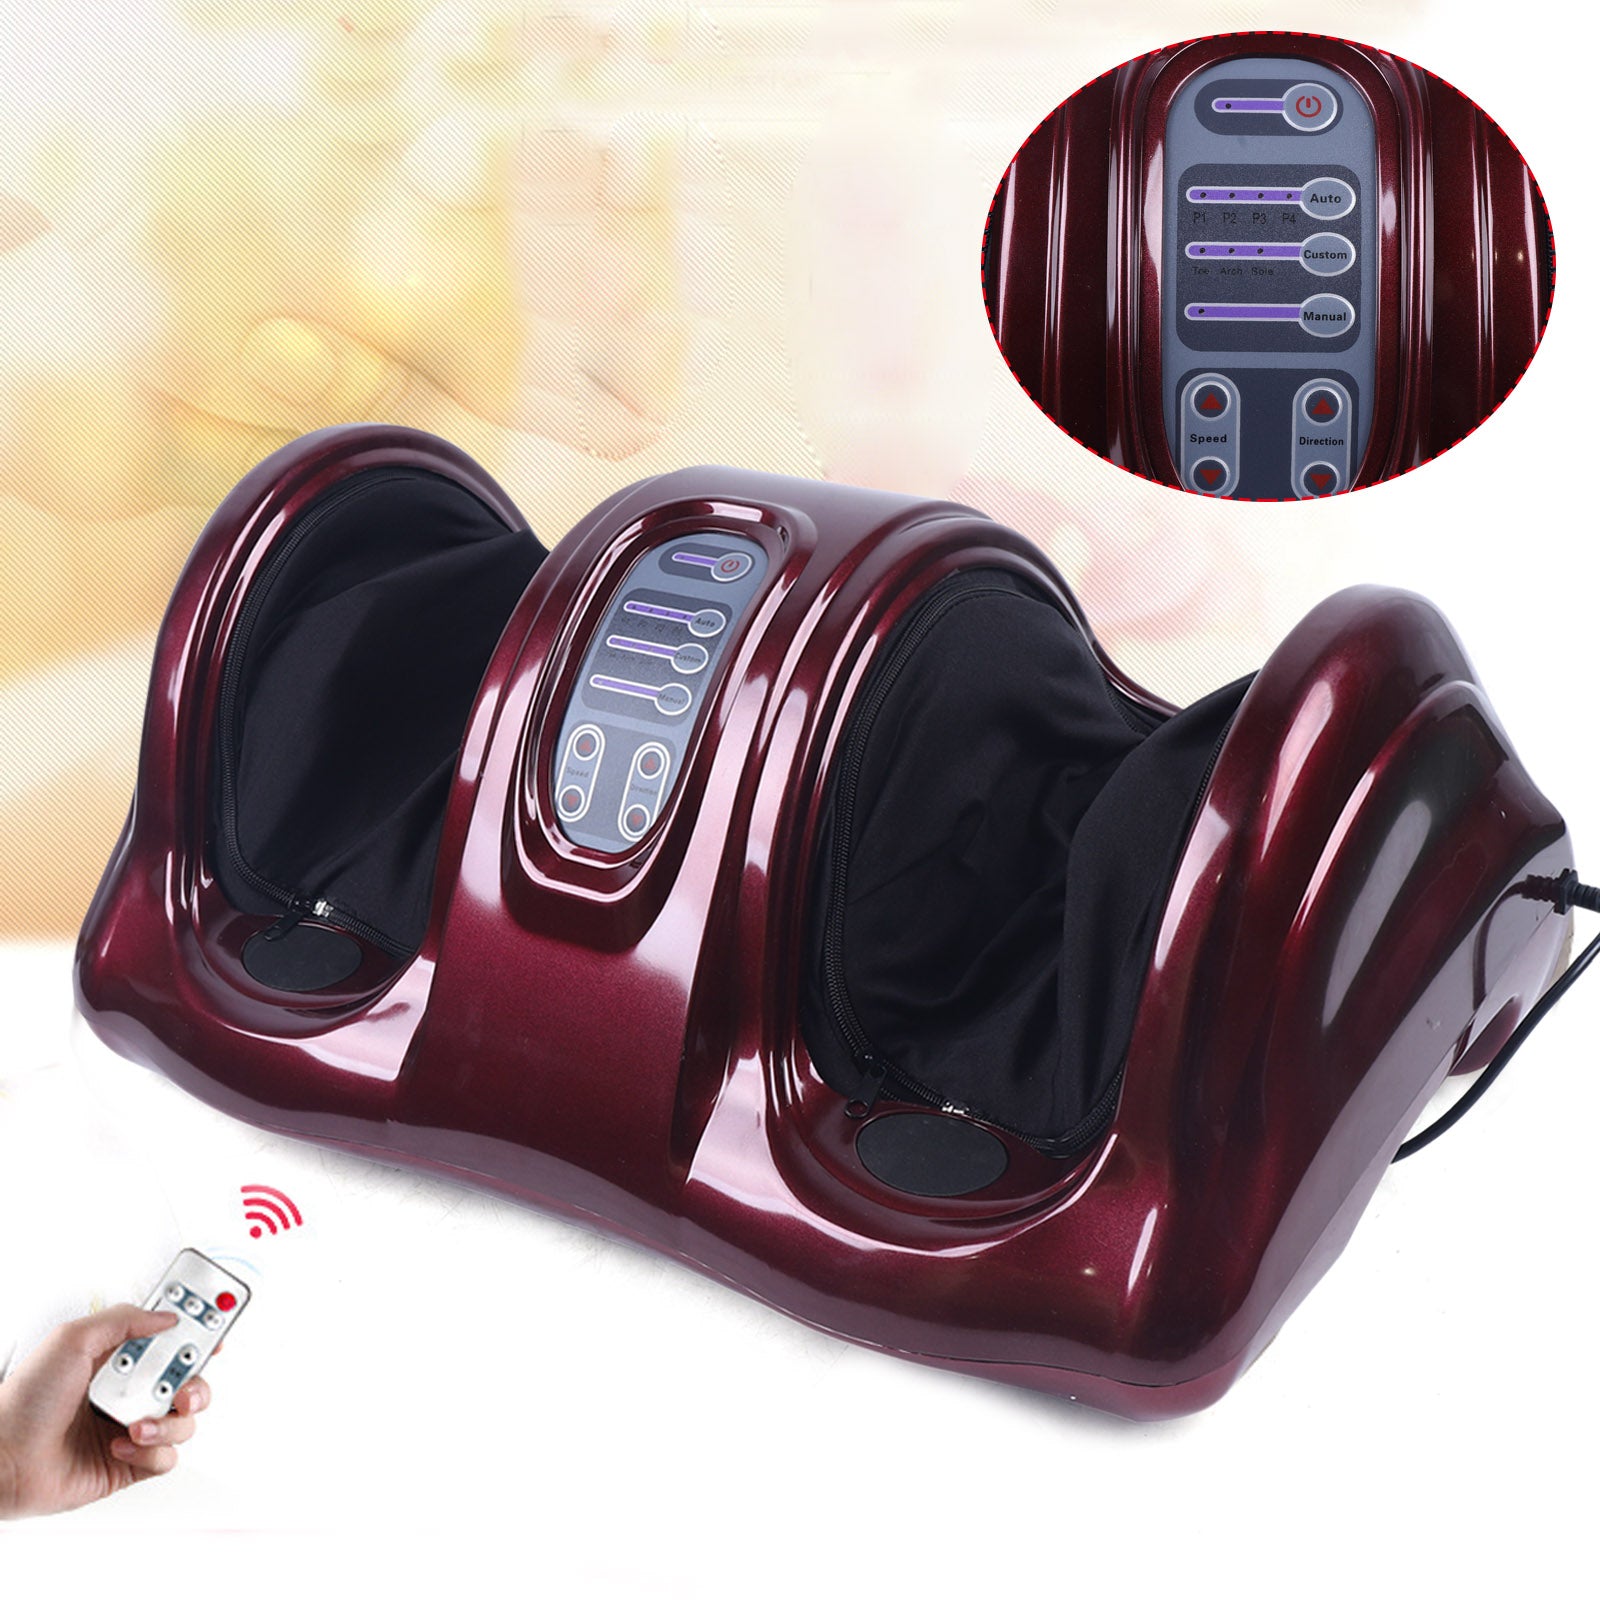 Massaggiatore Elettrico per piedi massaggiatore con telecomando, 3 velocità, aumenta la circolazione sanguigna